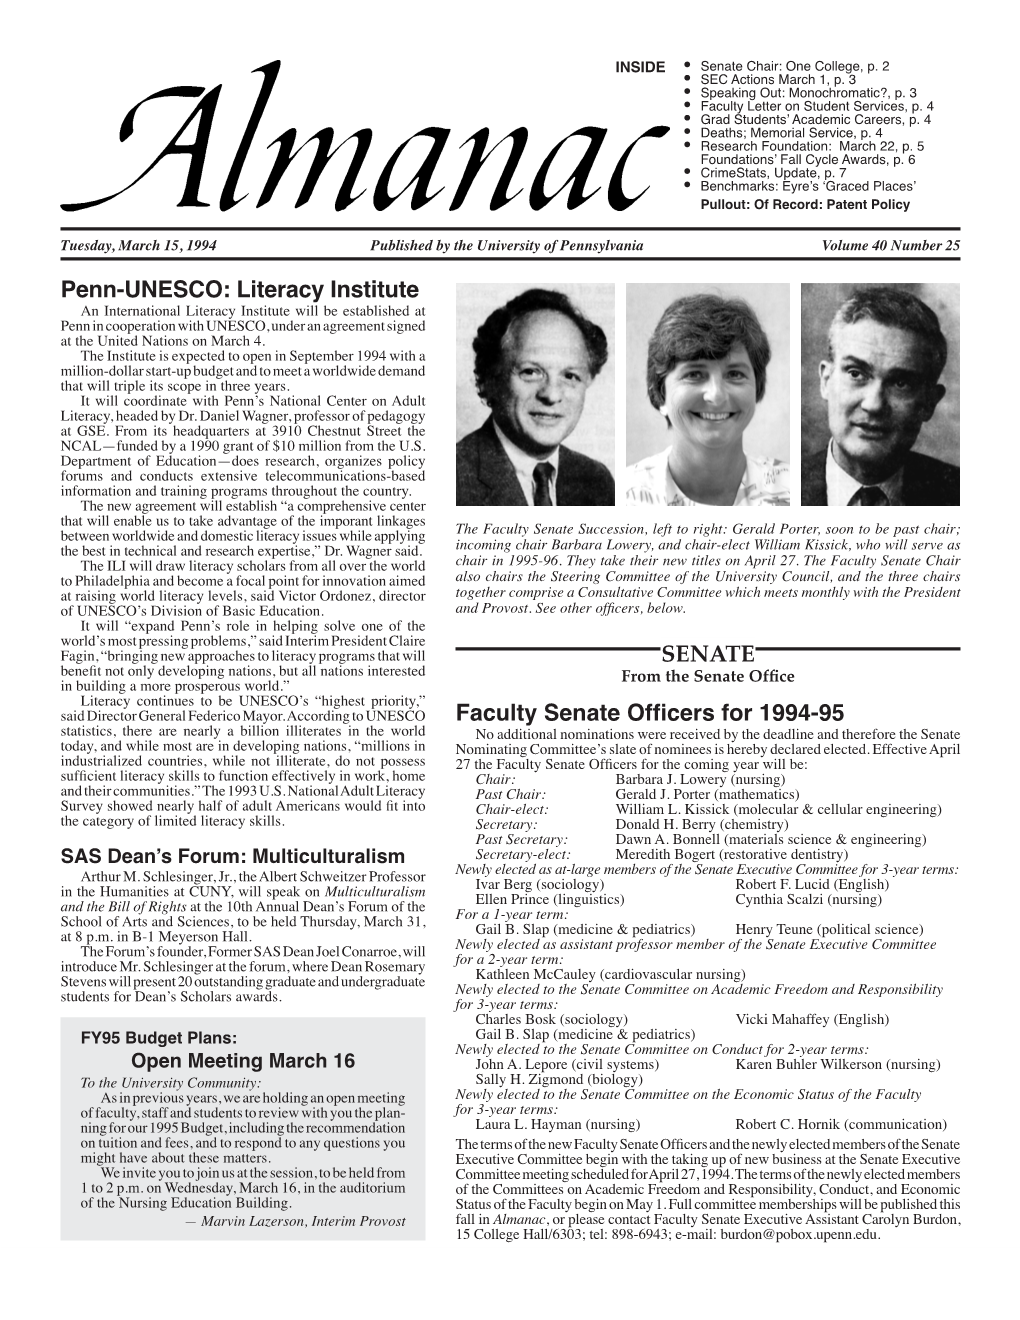 Almanac March 15, 1994  Senate from the Chair